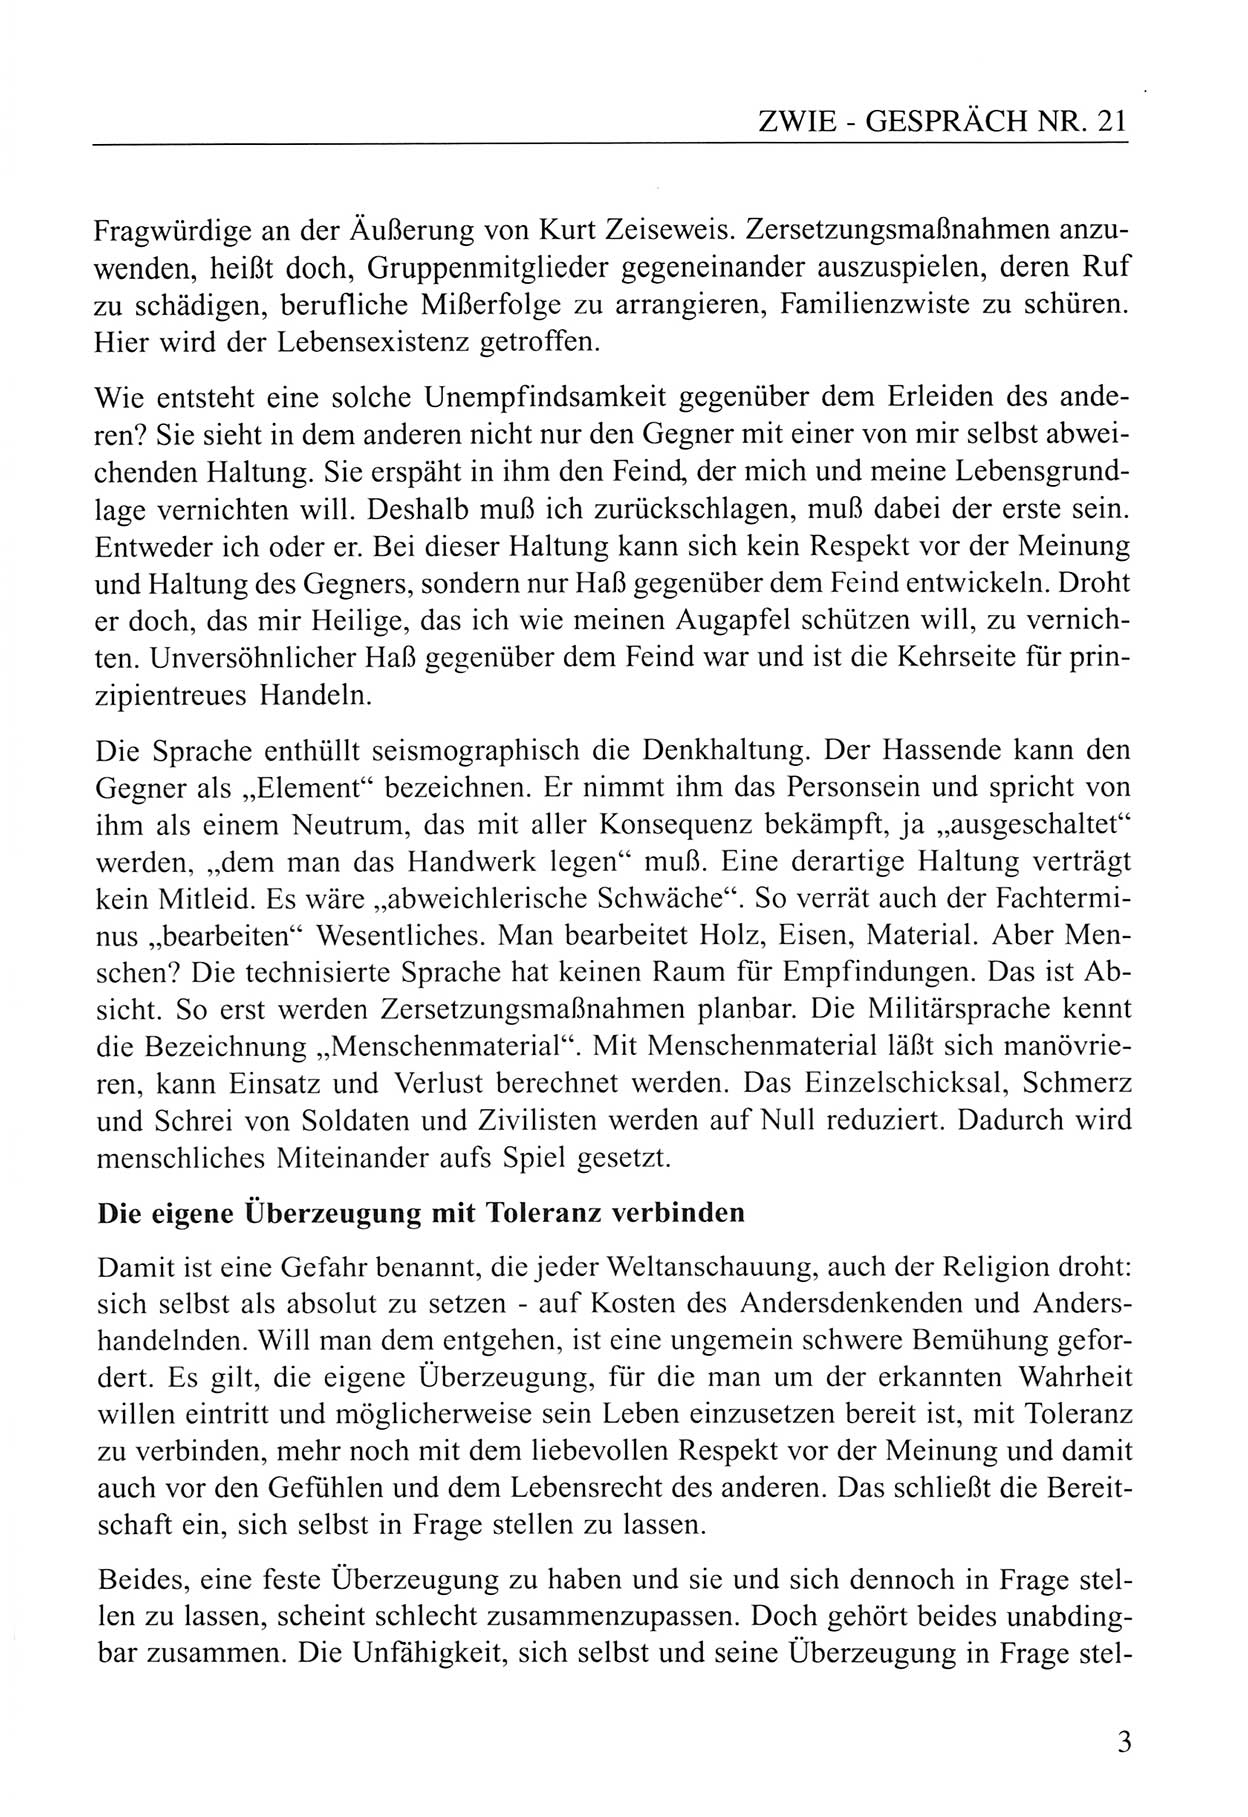 Zwie-Gespräch, Beiträge zum Umgang mit der Staatssicherheits-Vergangenheit [Deutsche Demokratische Republik (DDR)], Ausgabe Nr. 21, Berlin 1994, Seite 3 (Zwie-Gespr. Ausg. 21 1994, S. 3)